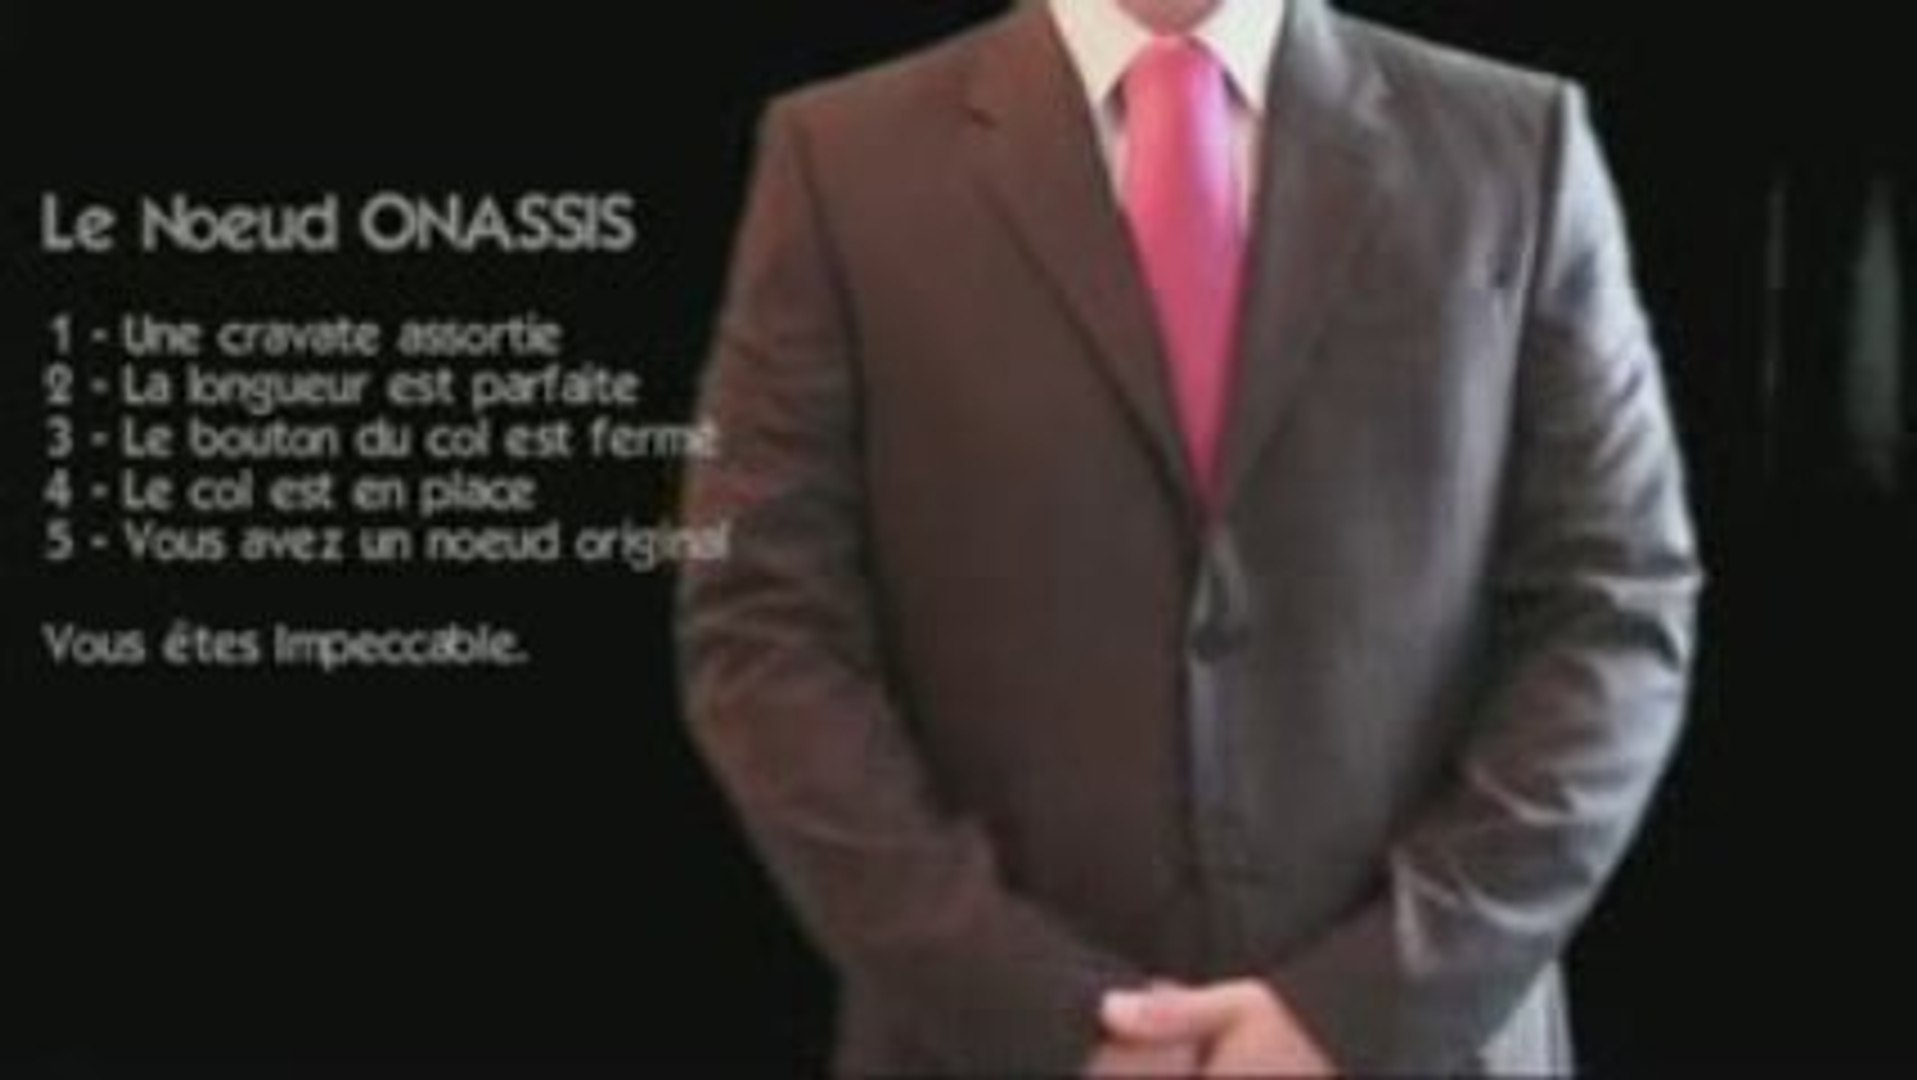 Le noeud de cravate Onassis - Faire un noeud de cravate - Vidéo Dailymotion